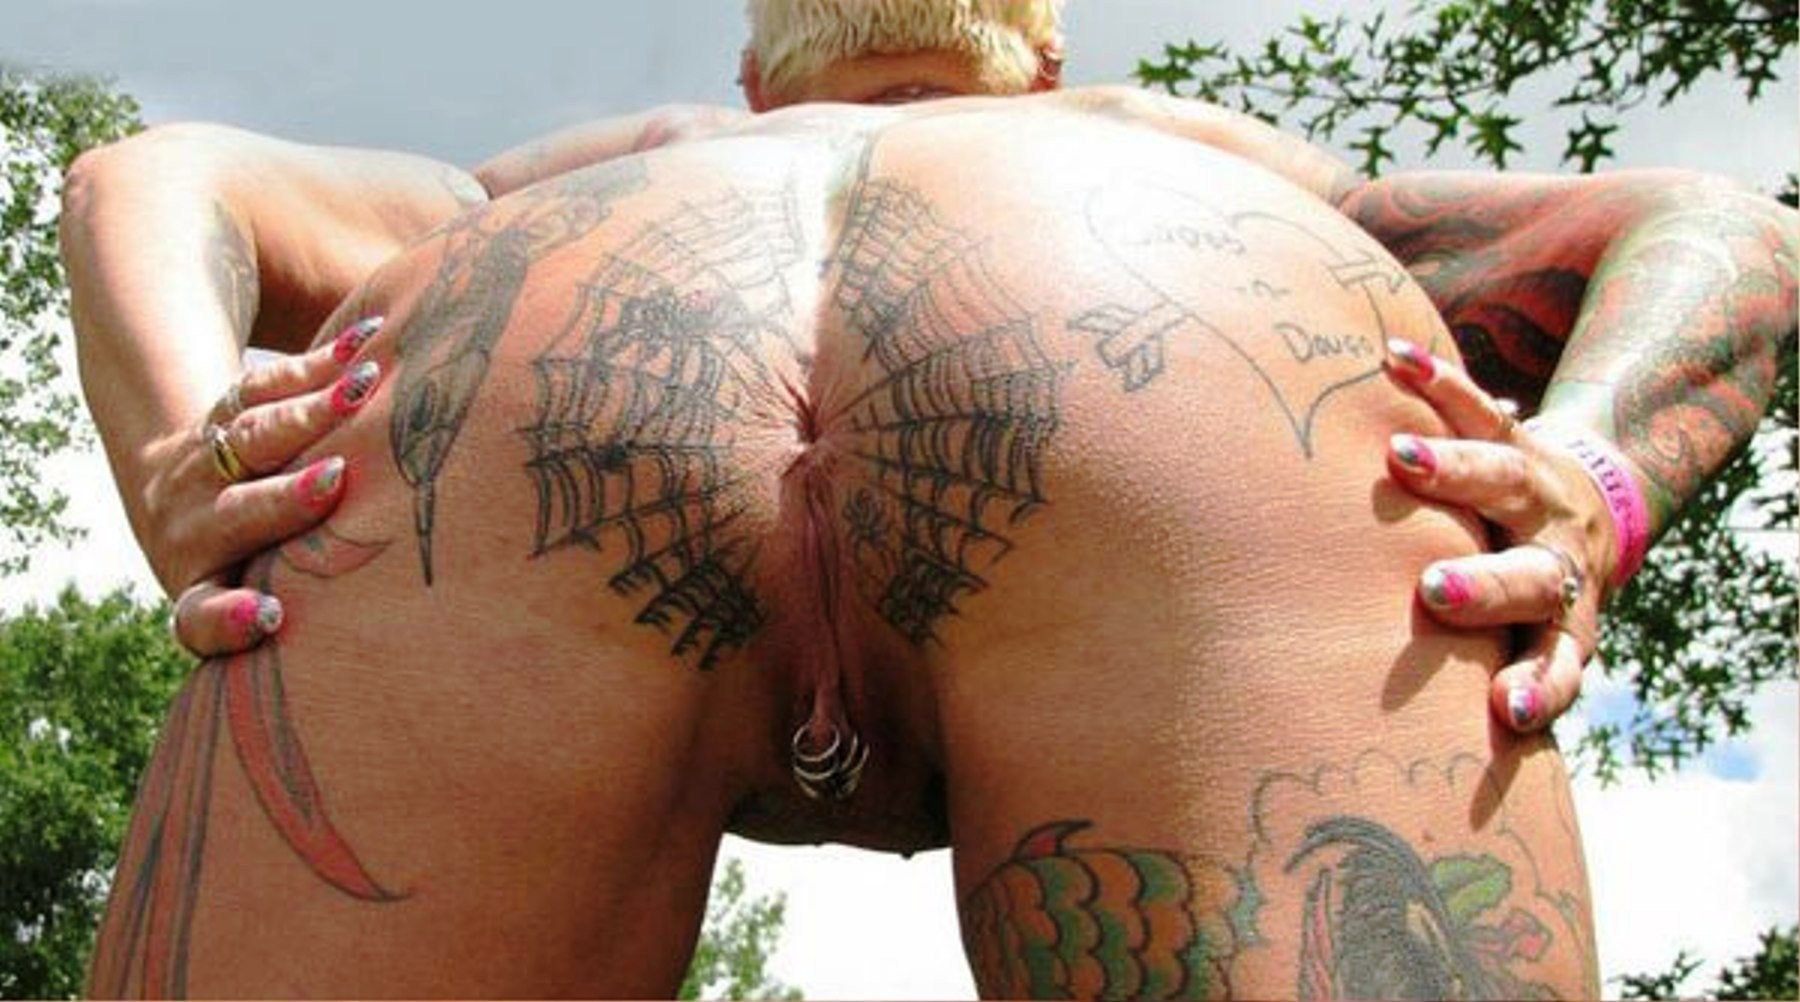 Смачные наколки на желанных сучках - фото голых с татуировками